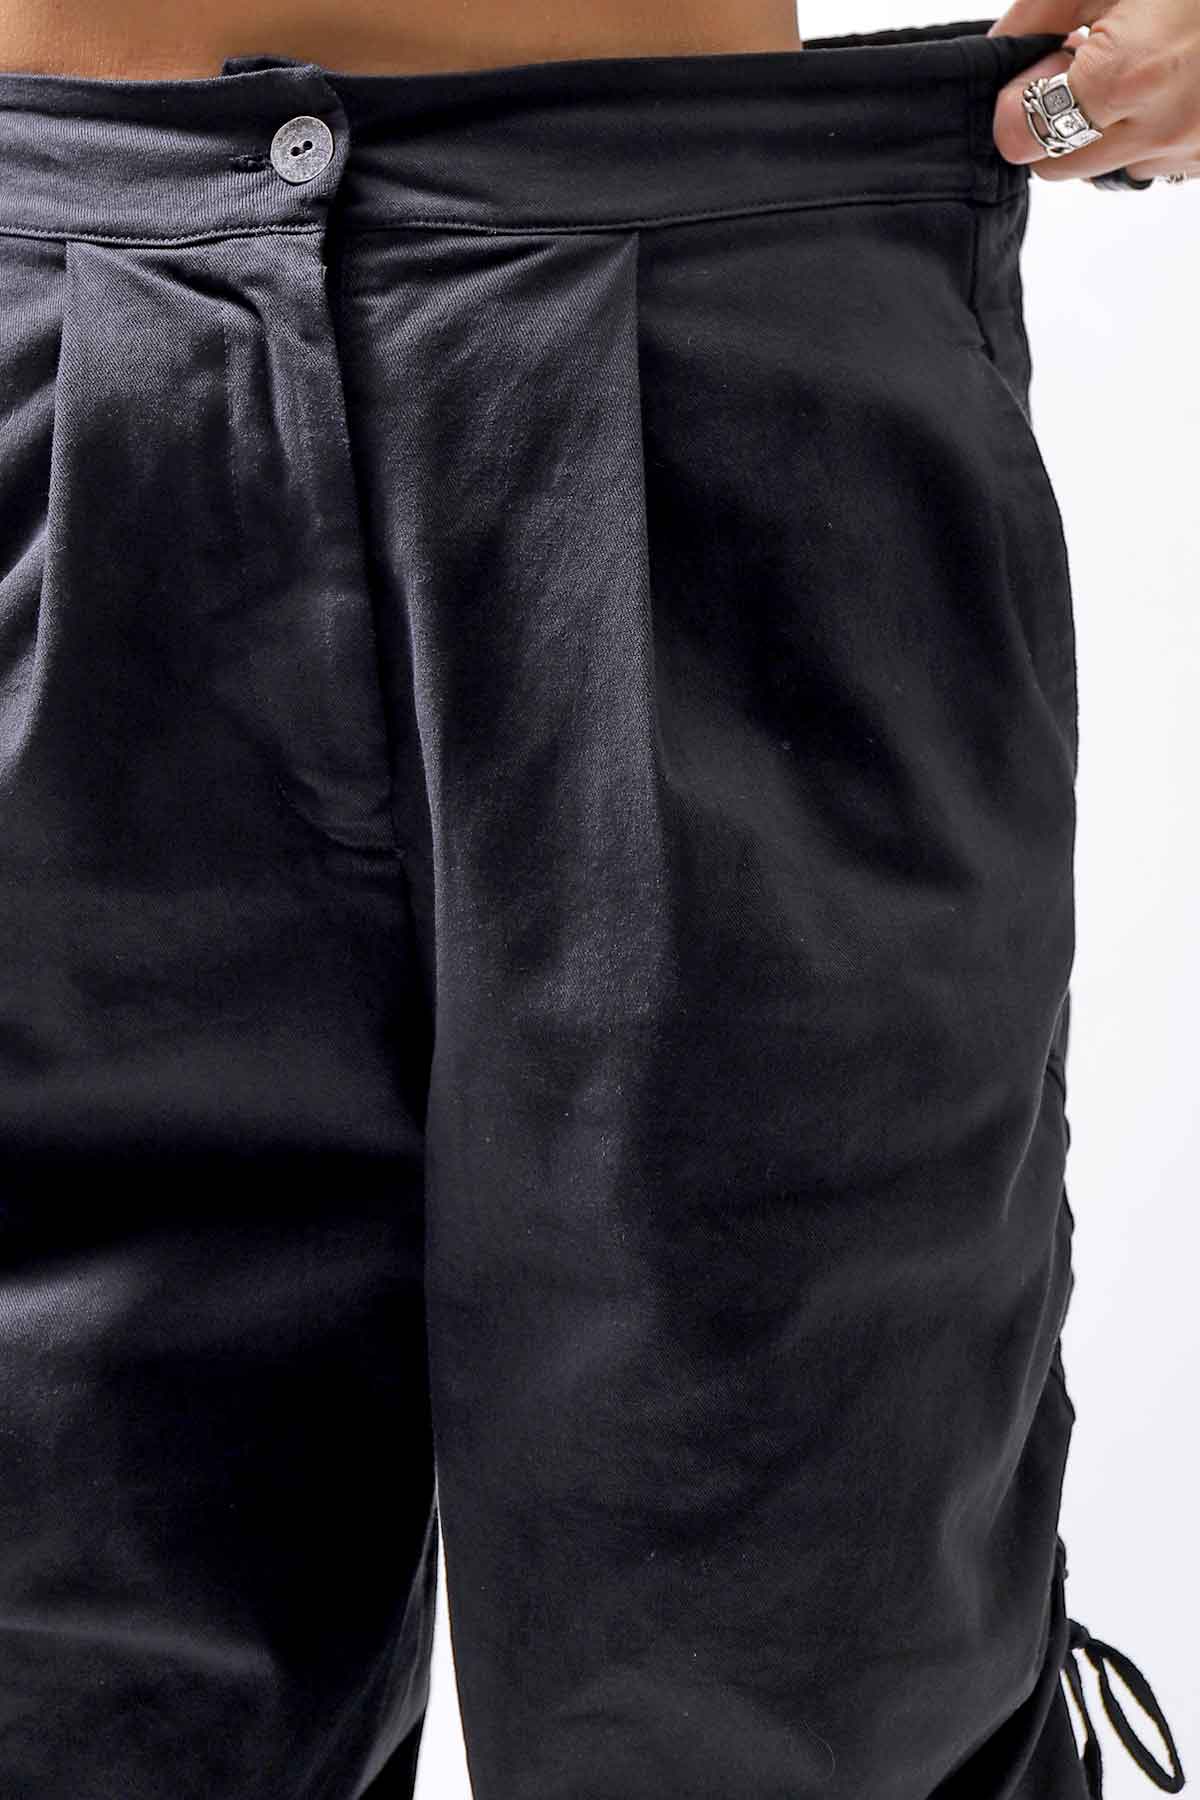 【sanctamuerte】 UNISEX SIDE STRING CODE PANTS 319/MM_BLACK